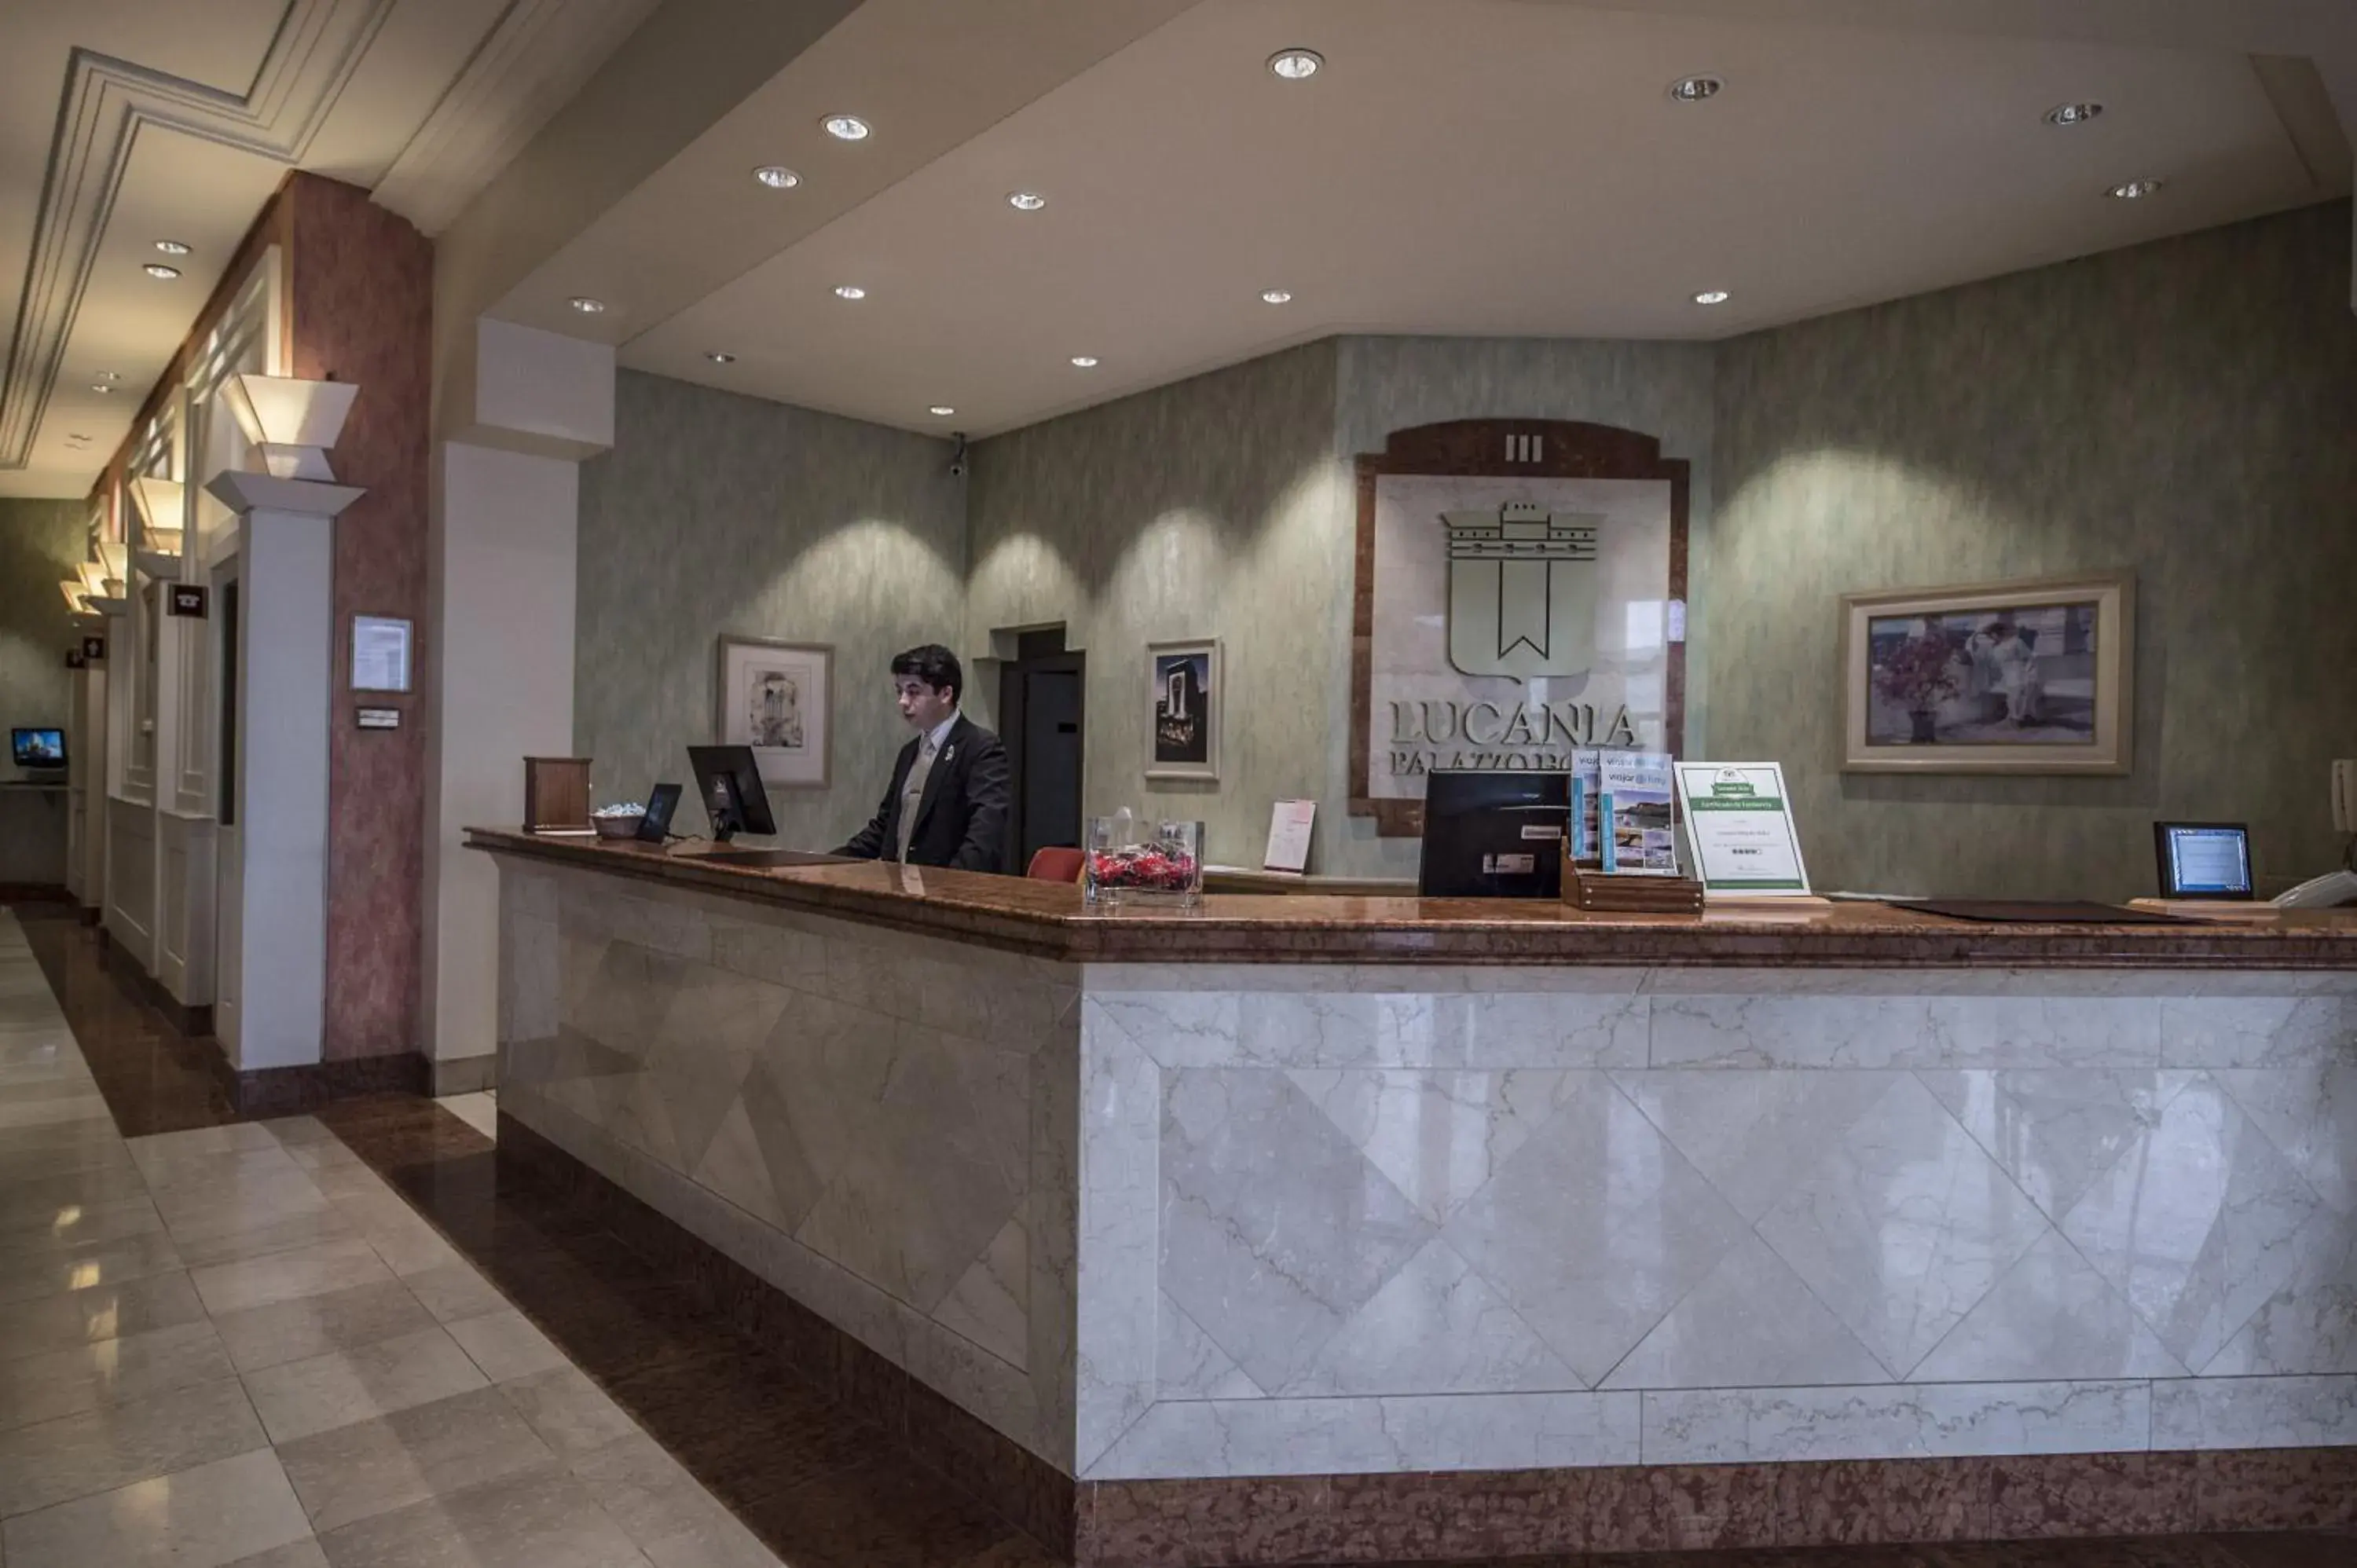 Lobby or reception, Lobby/Reception in Lucania Palazzo Hotel